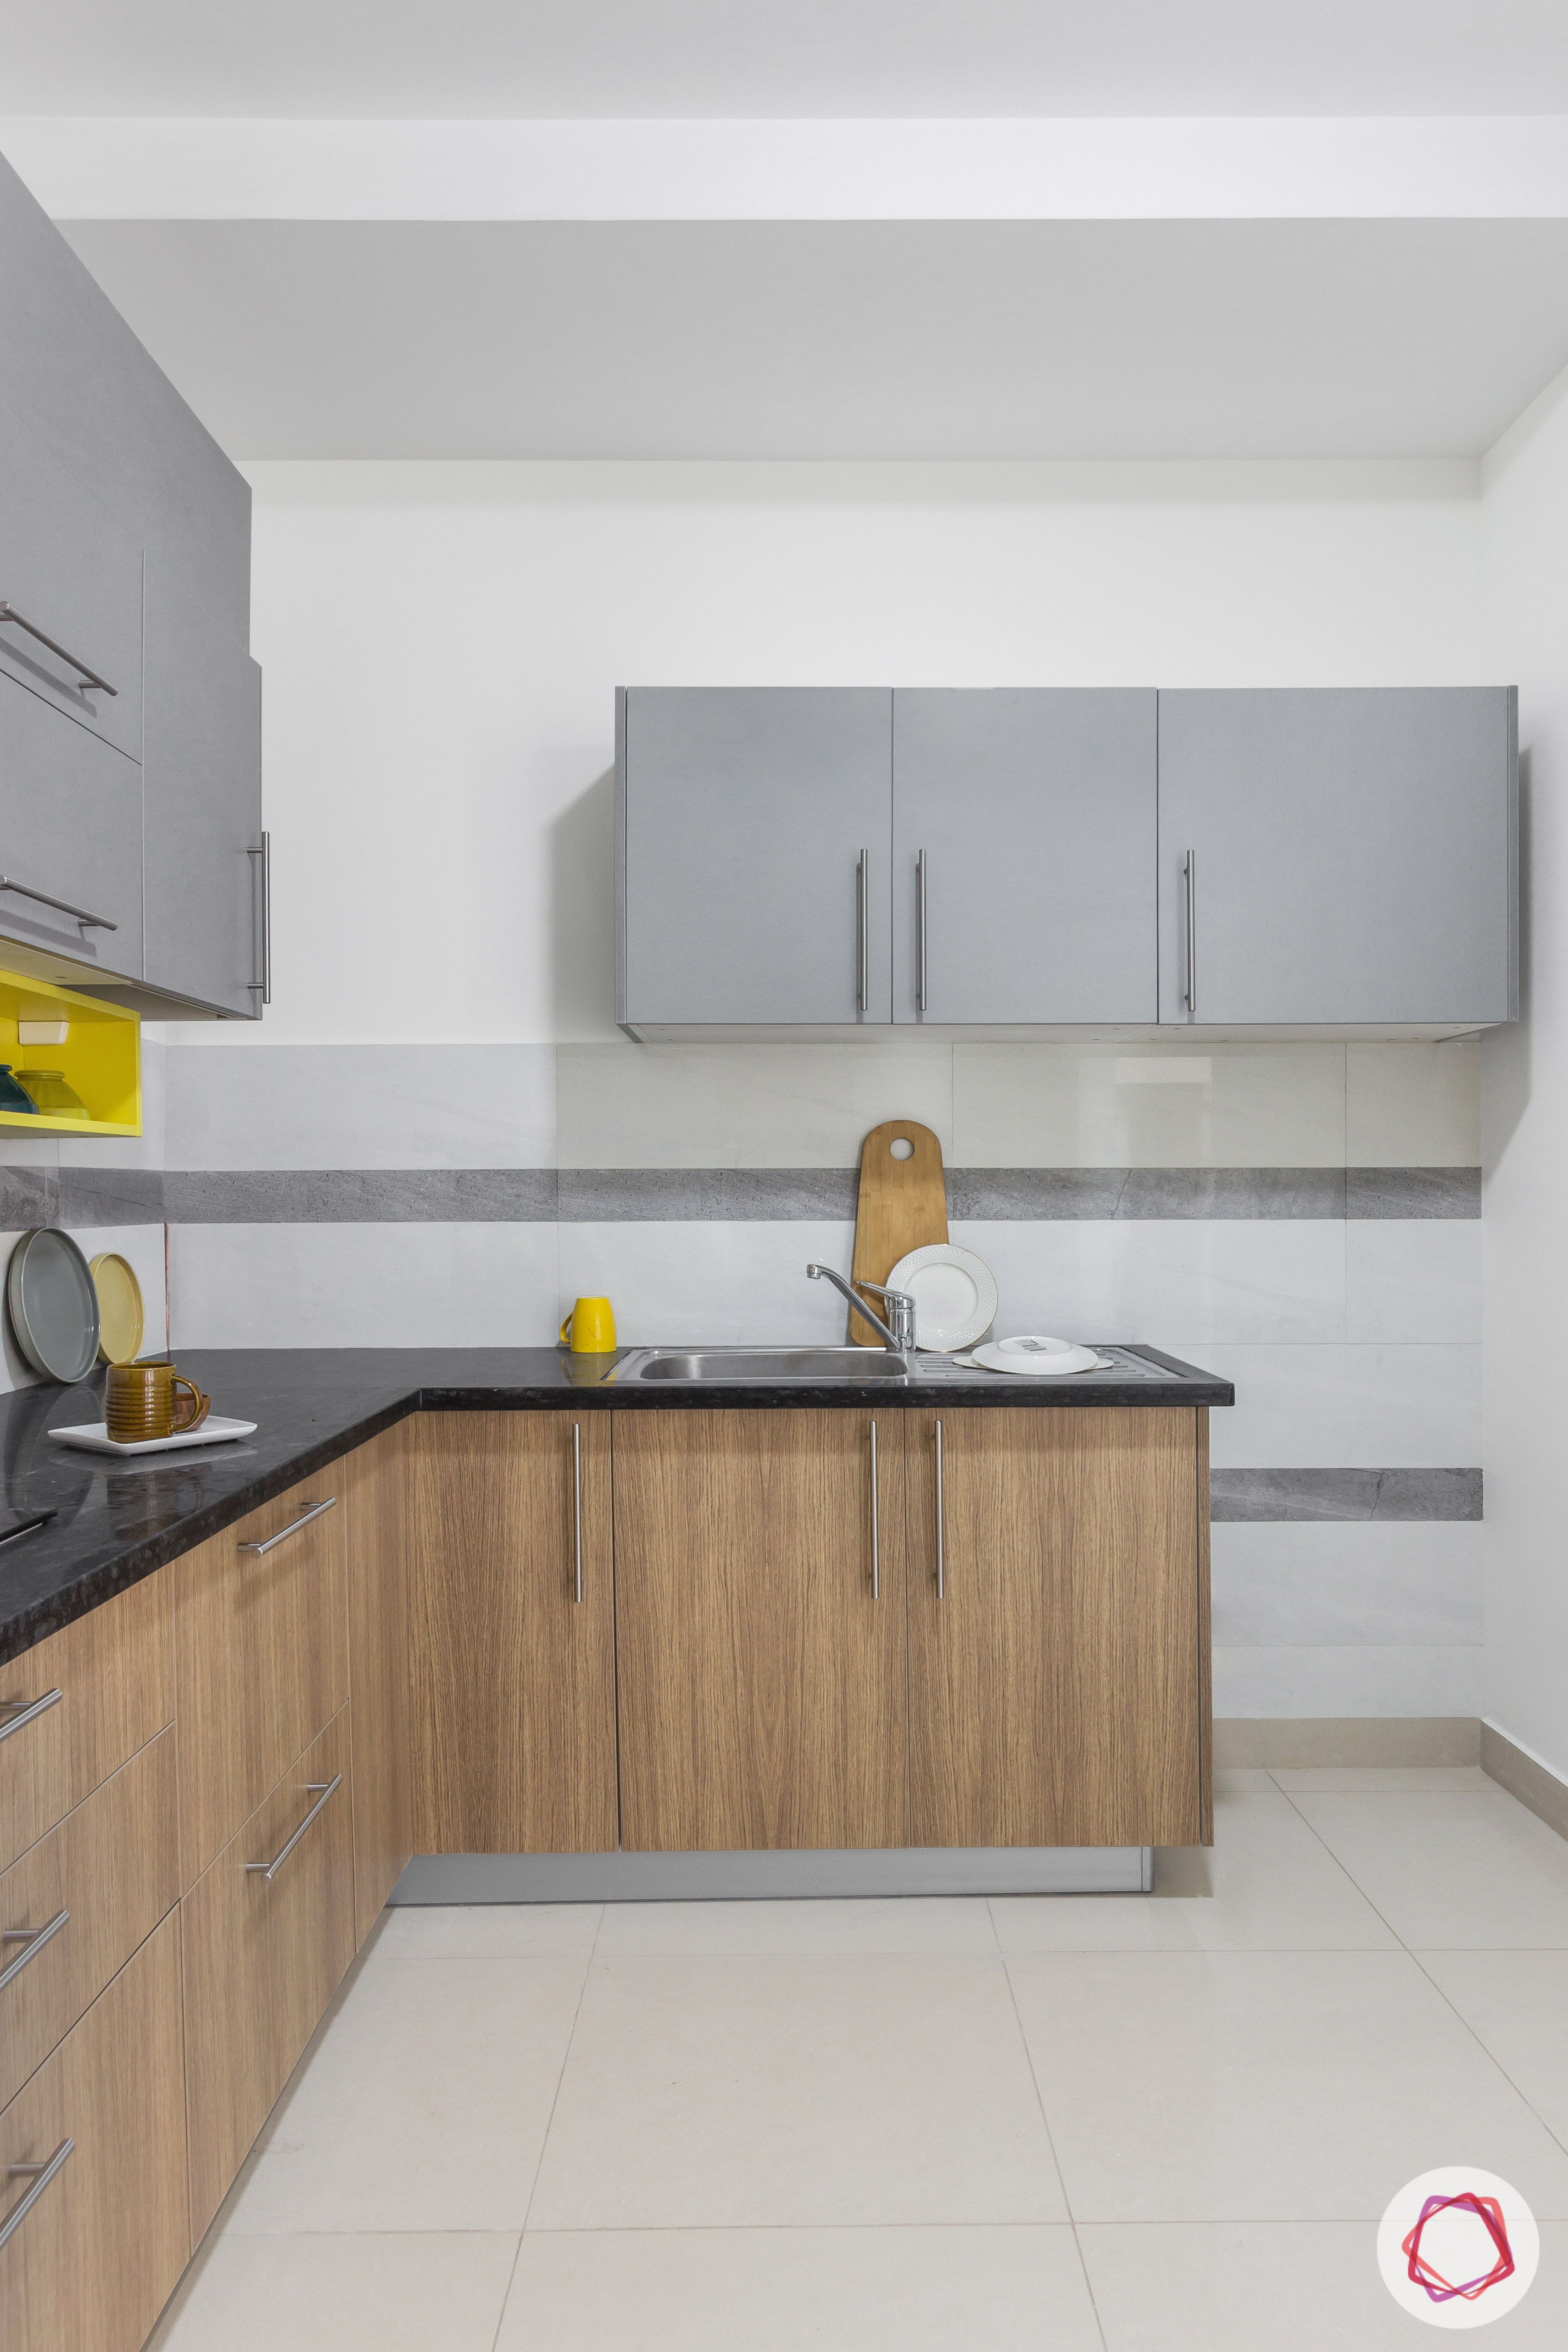 brigade northridge-budget kitchen design-kitchen alignment